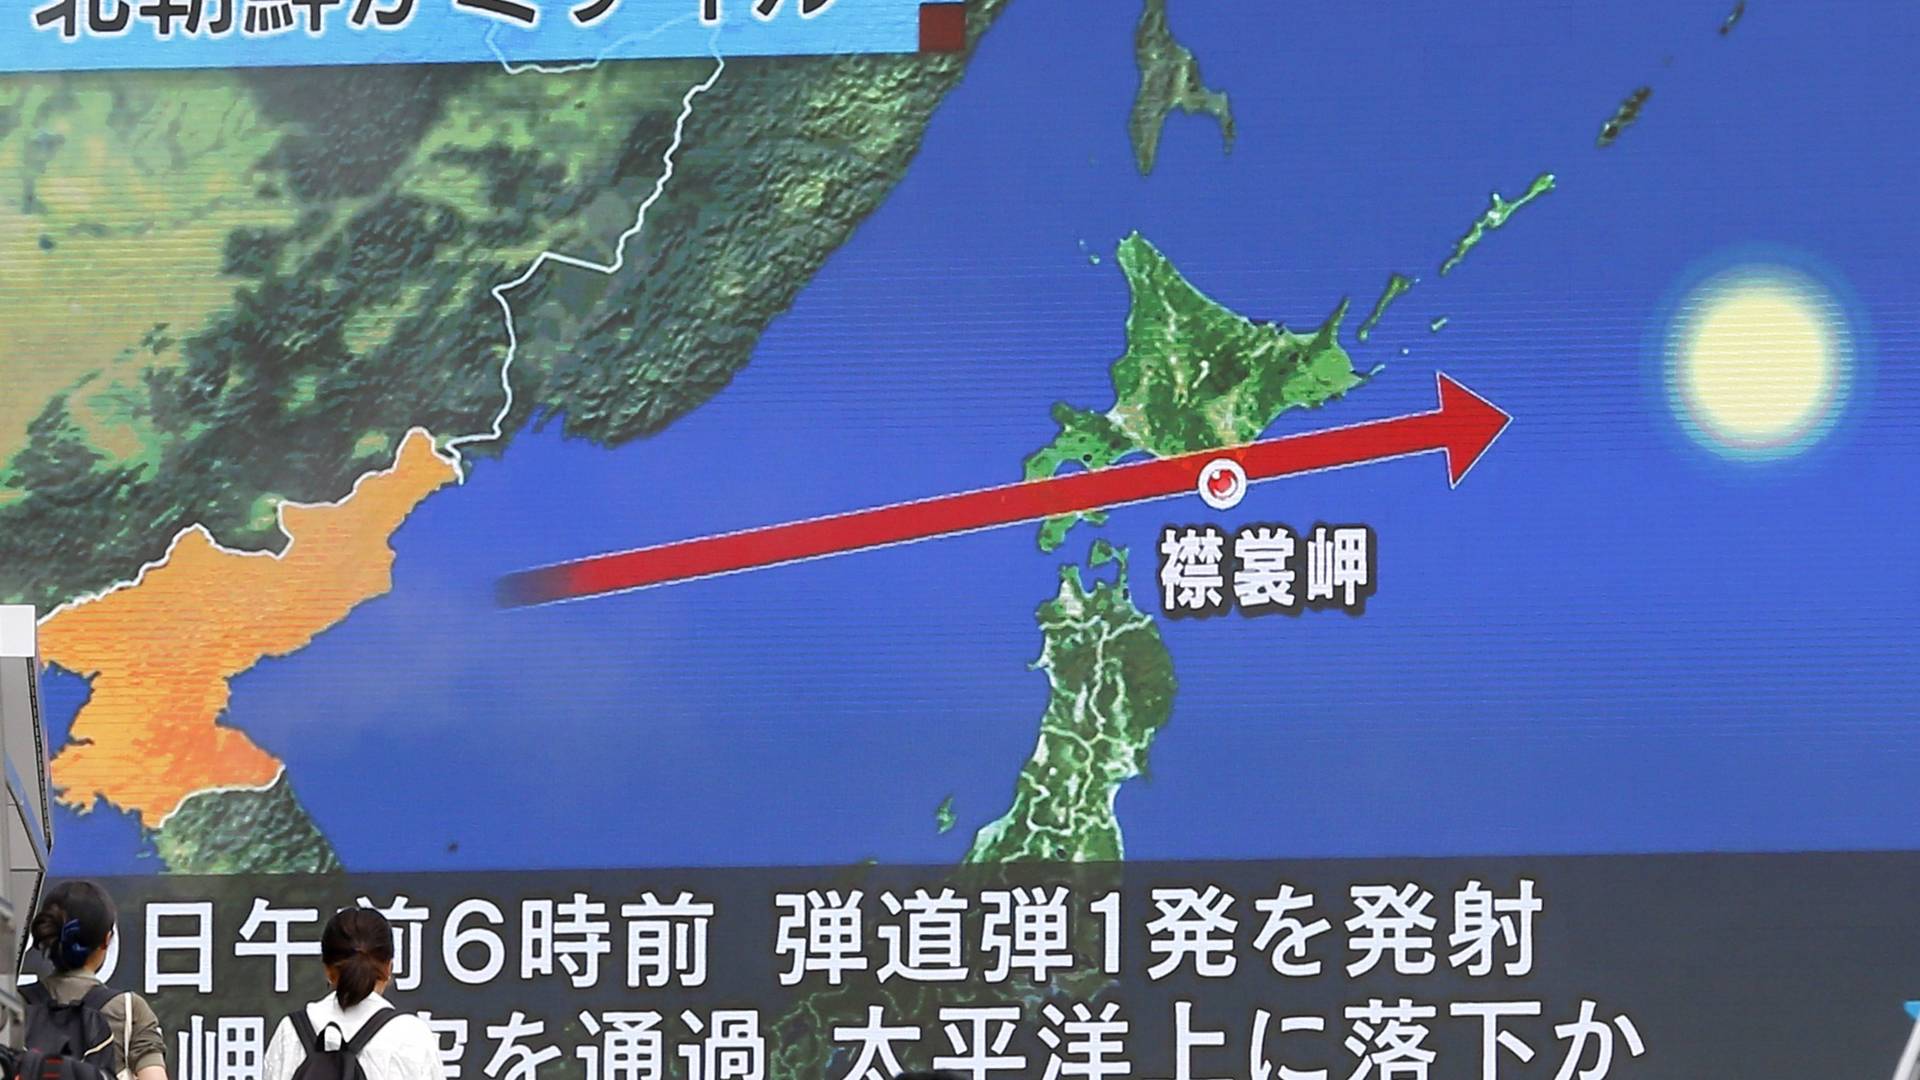 Észak-koreai rakáta húzott át Japán felett